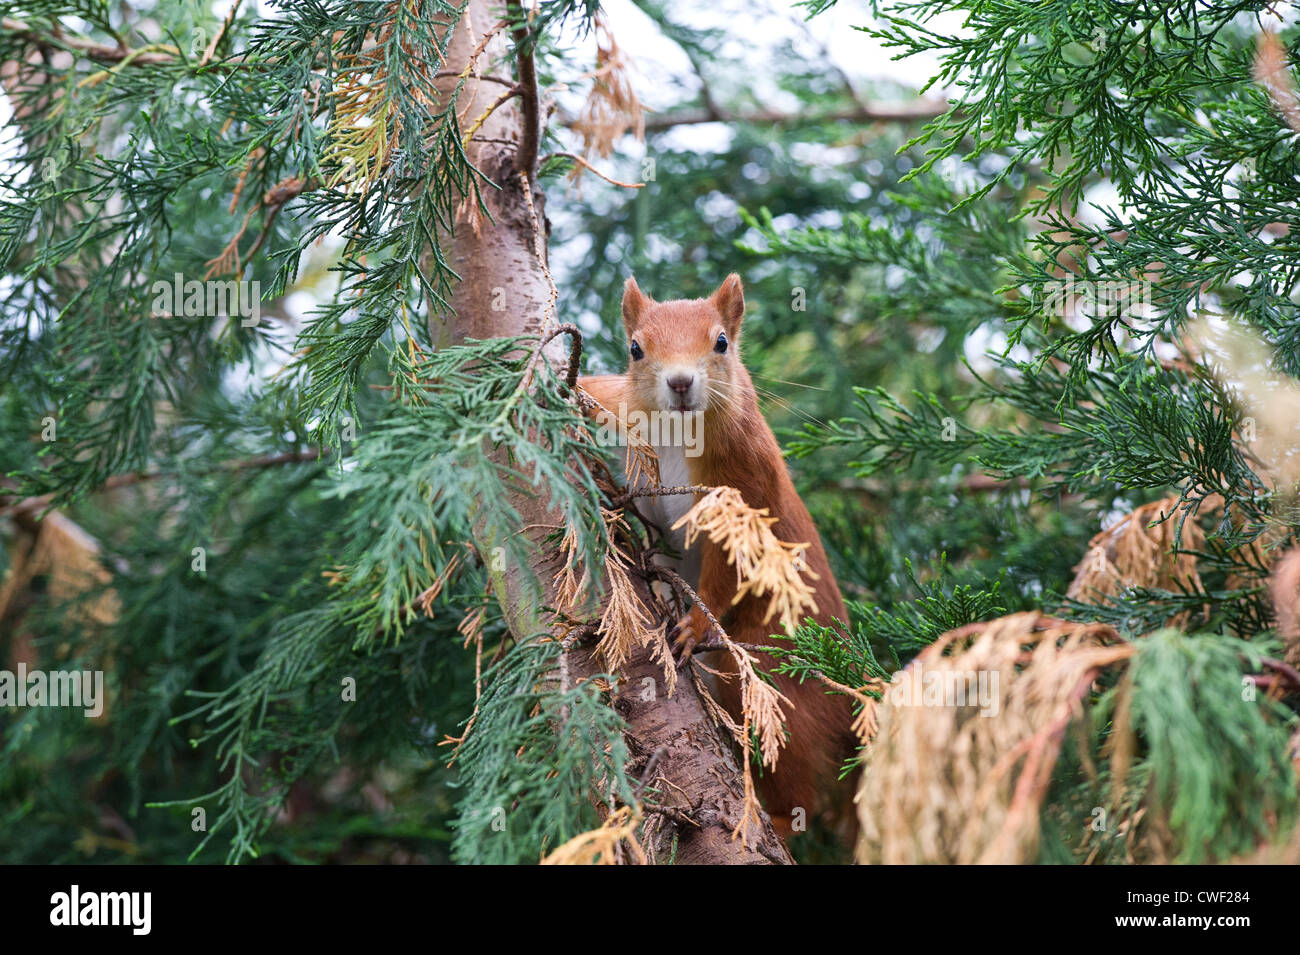 Eurasian écureuil roux (Sciurus vulgaris) Banque D'Images